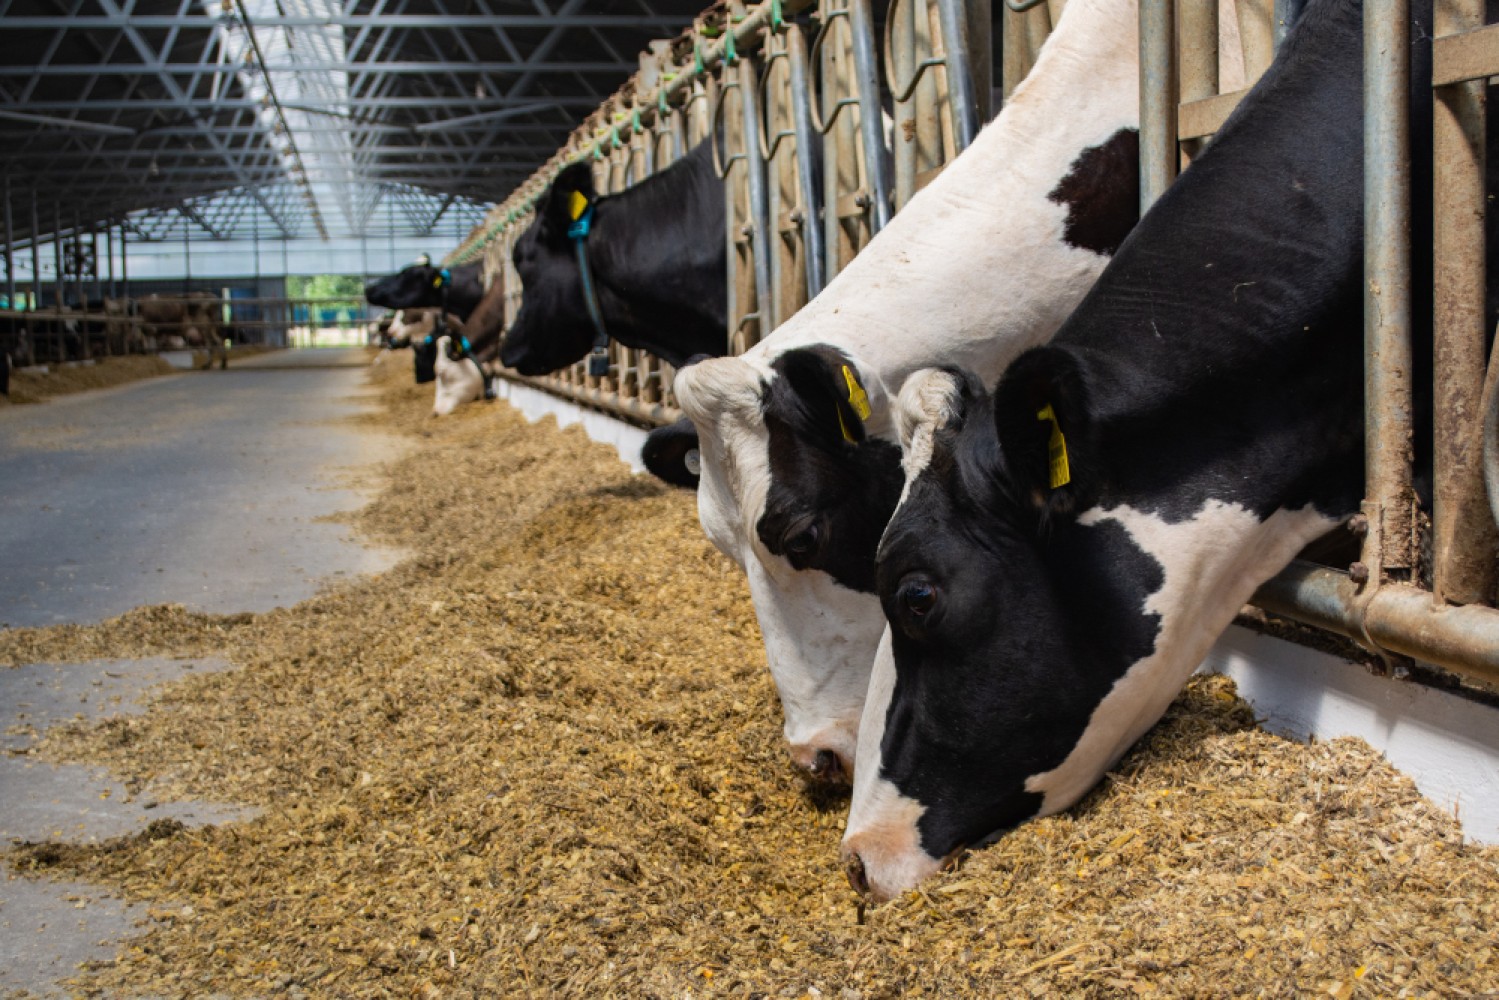 Использование сочных и животных кормов существенно влияет на производственные показатели в молочной промышленности. Они влияют на качество получаемого молока и здоровье животных. Наша статья поможет вам понять основы использования этих видов кормов и их значимость в молочном производстве.